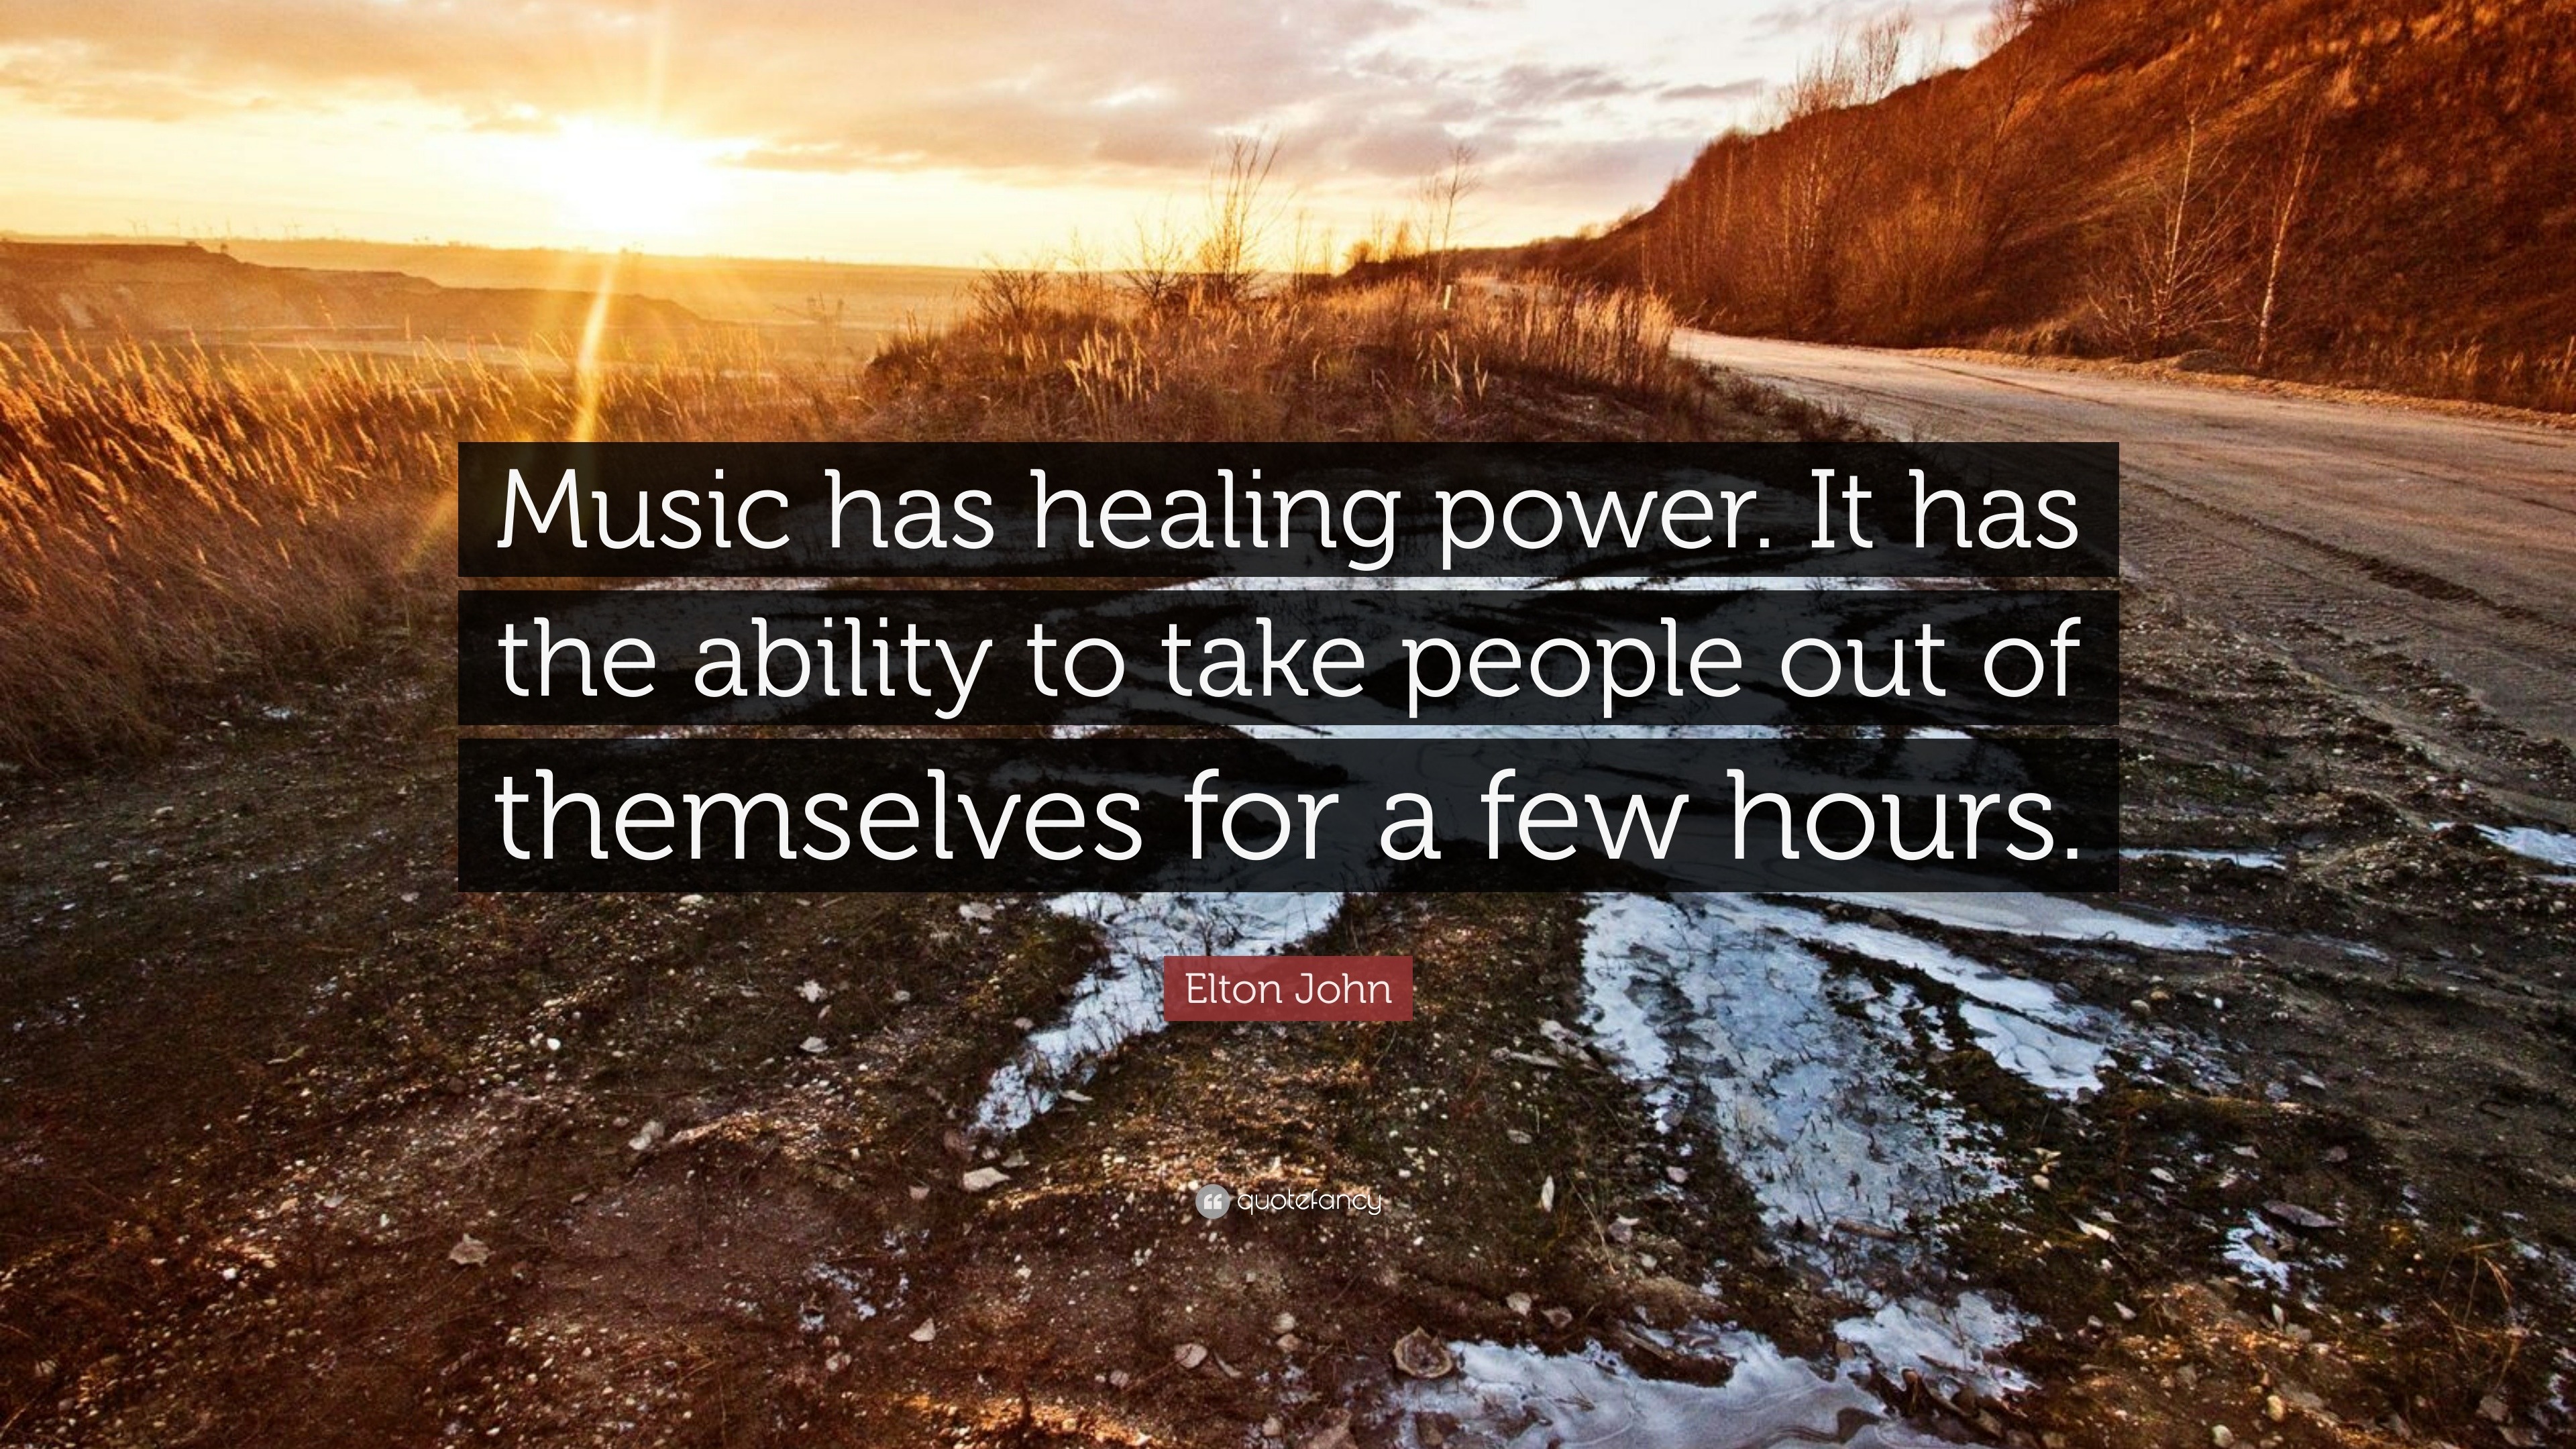 speech on music has healing power